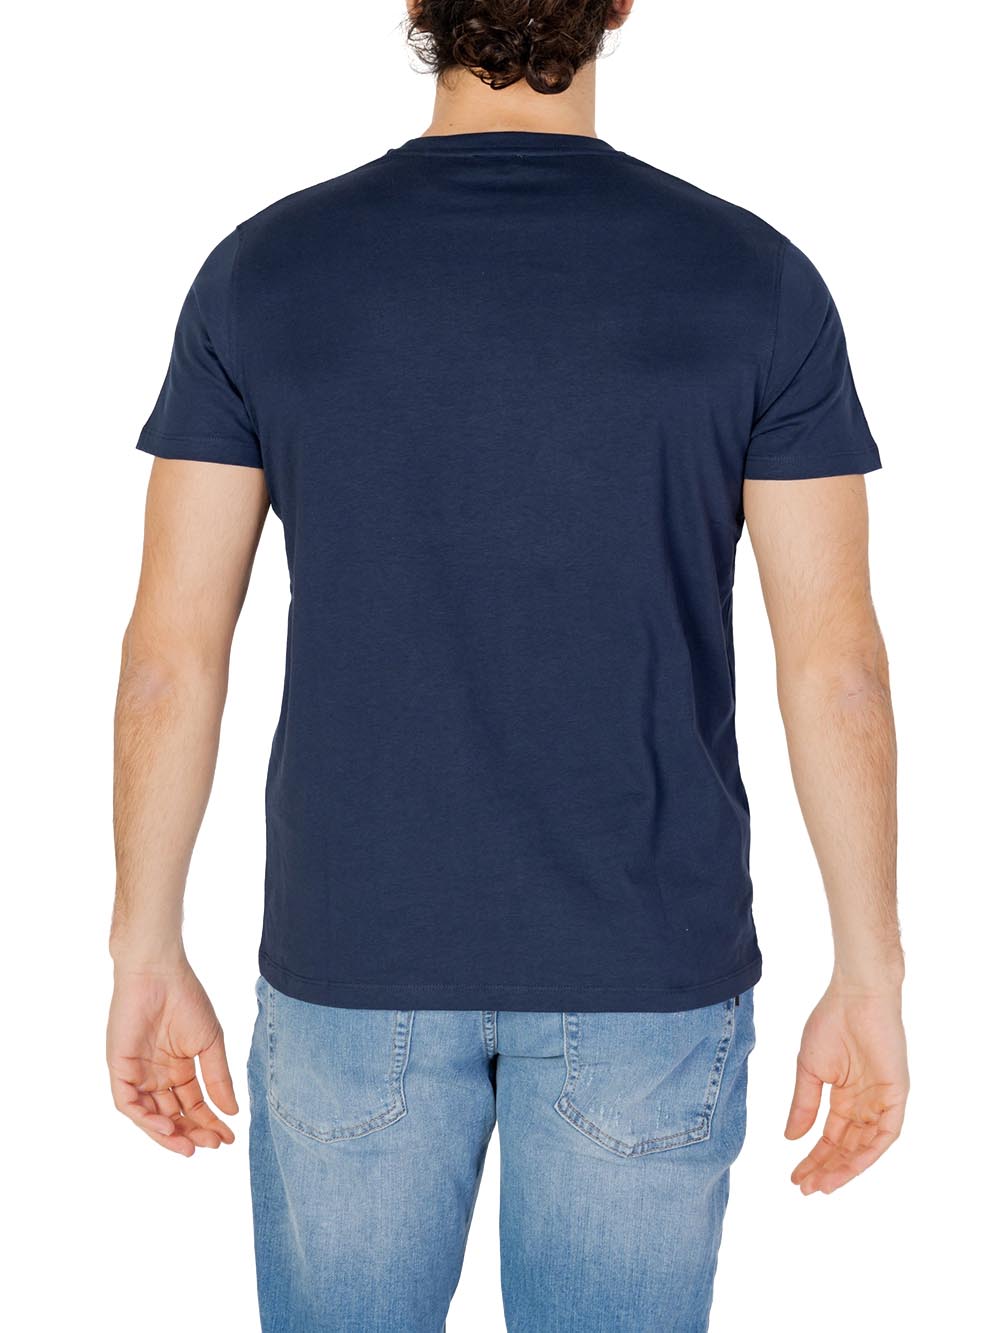 U.S. Polo Assn. T-shirt Uomo Mick 67359 49351 Blu